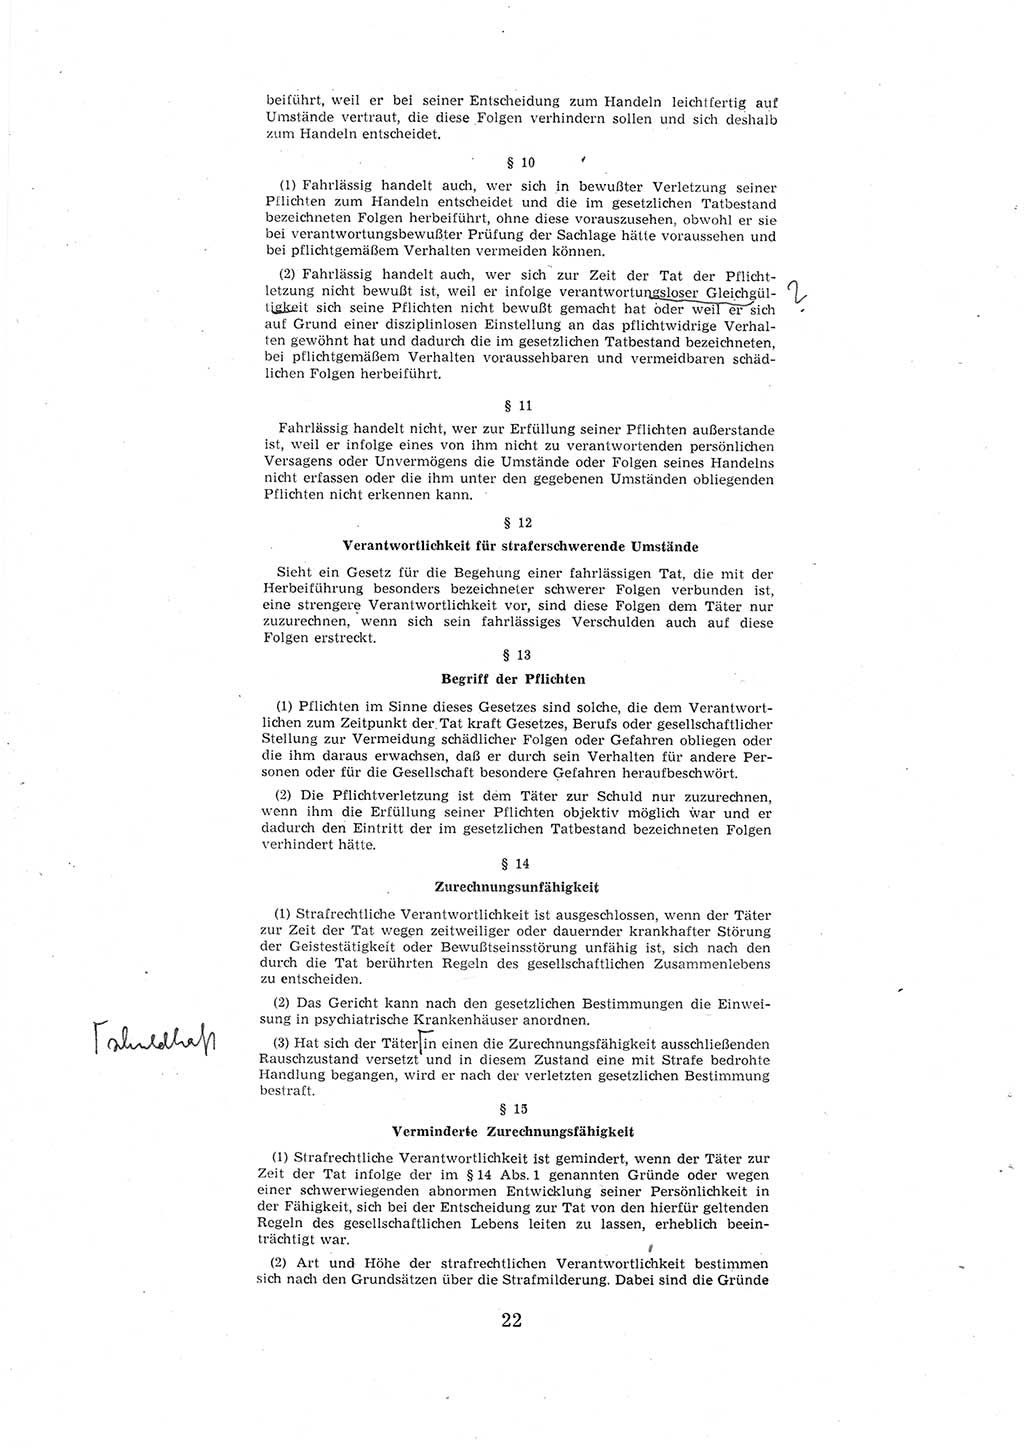 Entwurf des Strafgesetzbuches (StGB) der Deutschen Demokratischen Republik (DDR) 1967, Seite 22 (Entw. StGB DDR 1967, S. 22)